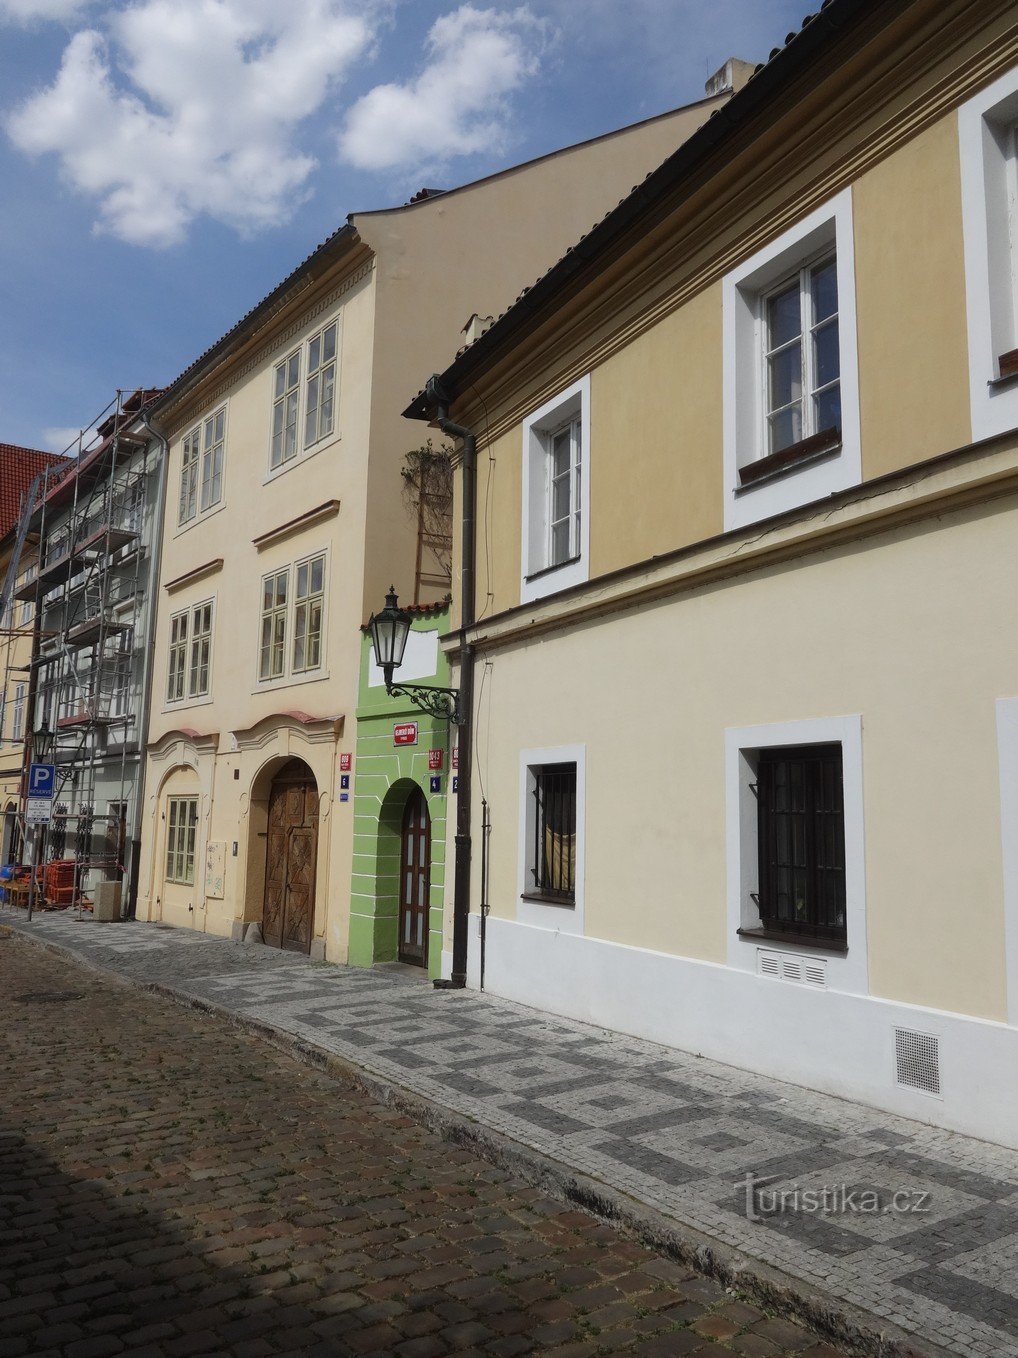 Прага и, наверное, самый узкий дом в Чехии